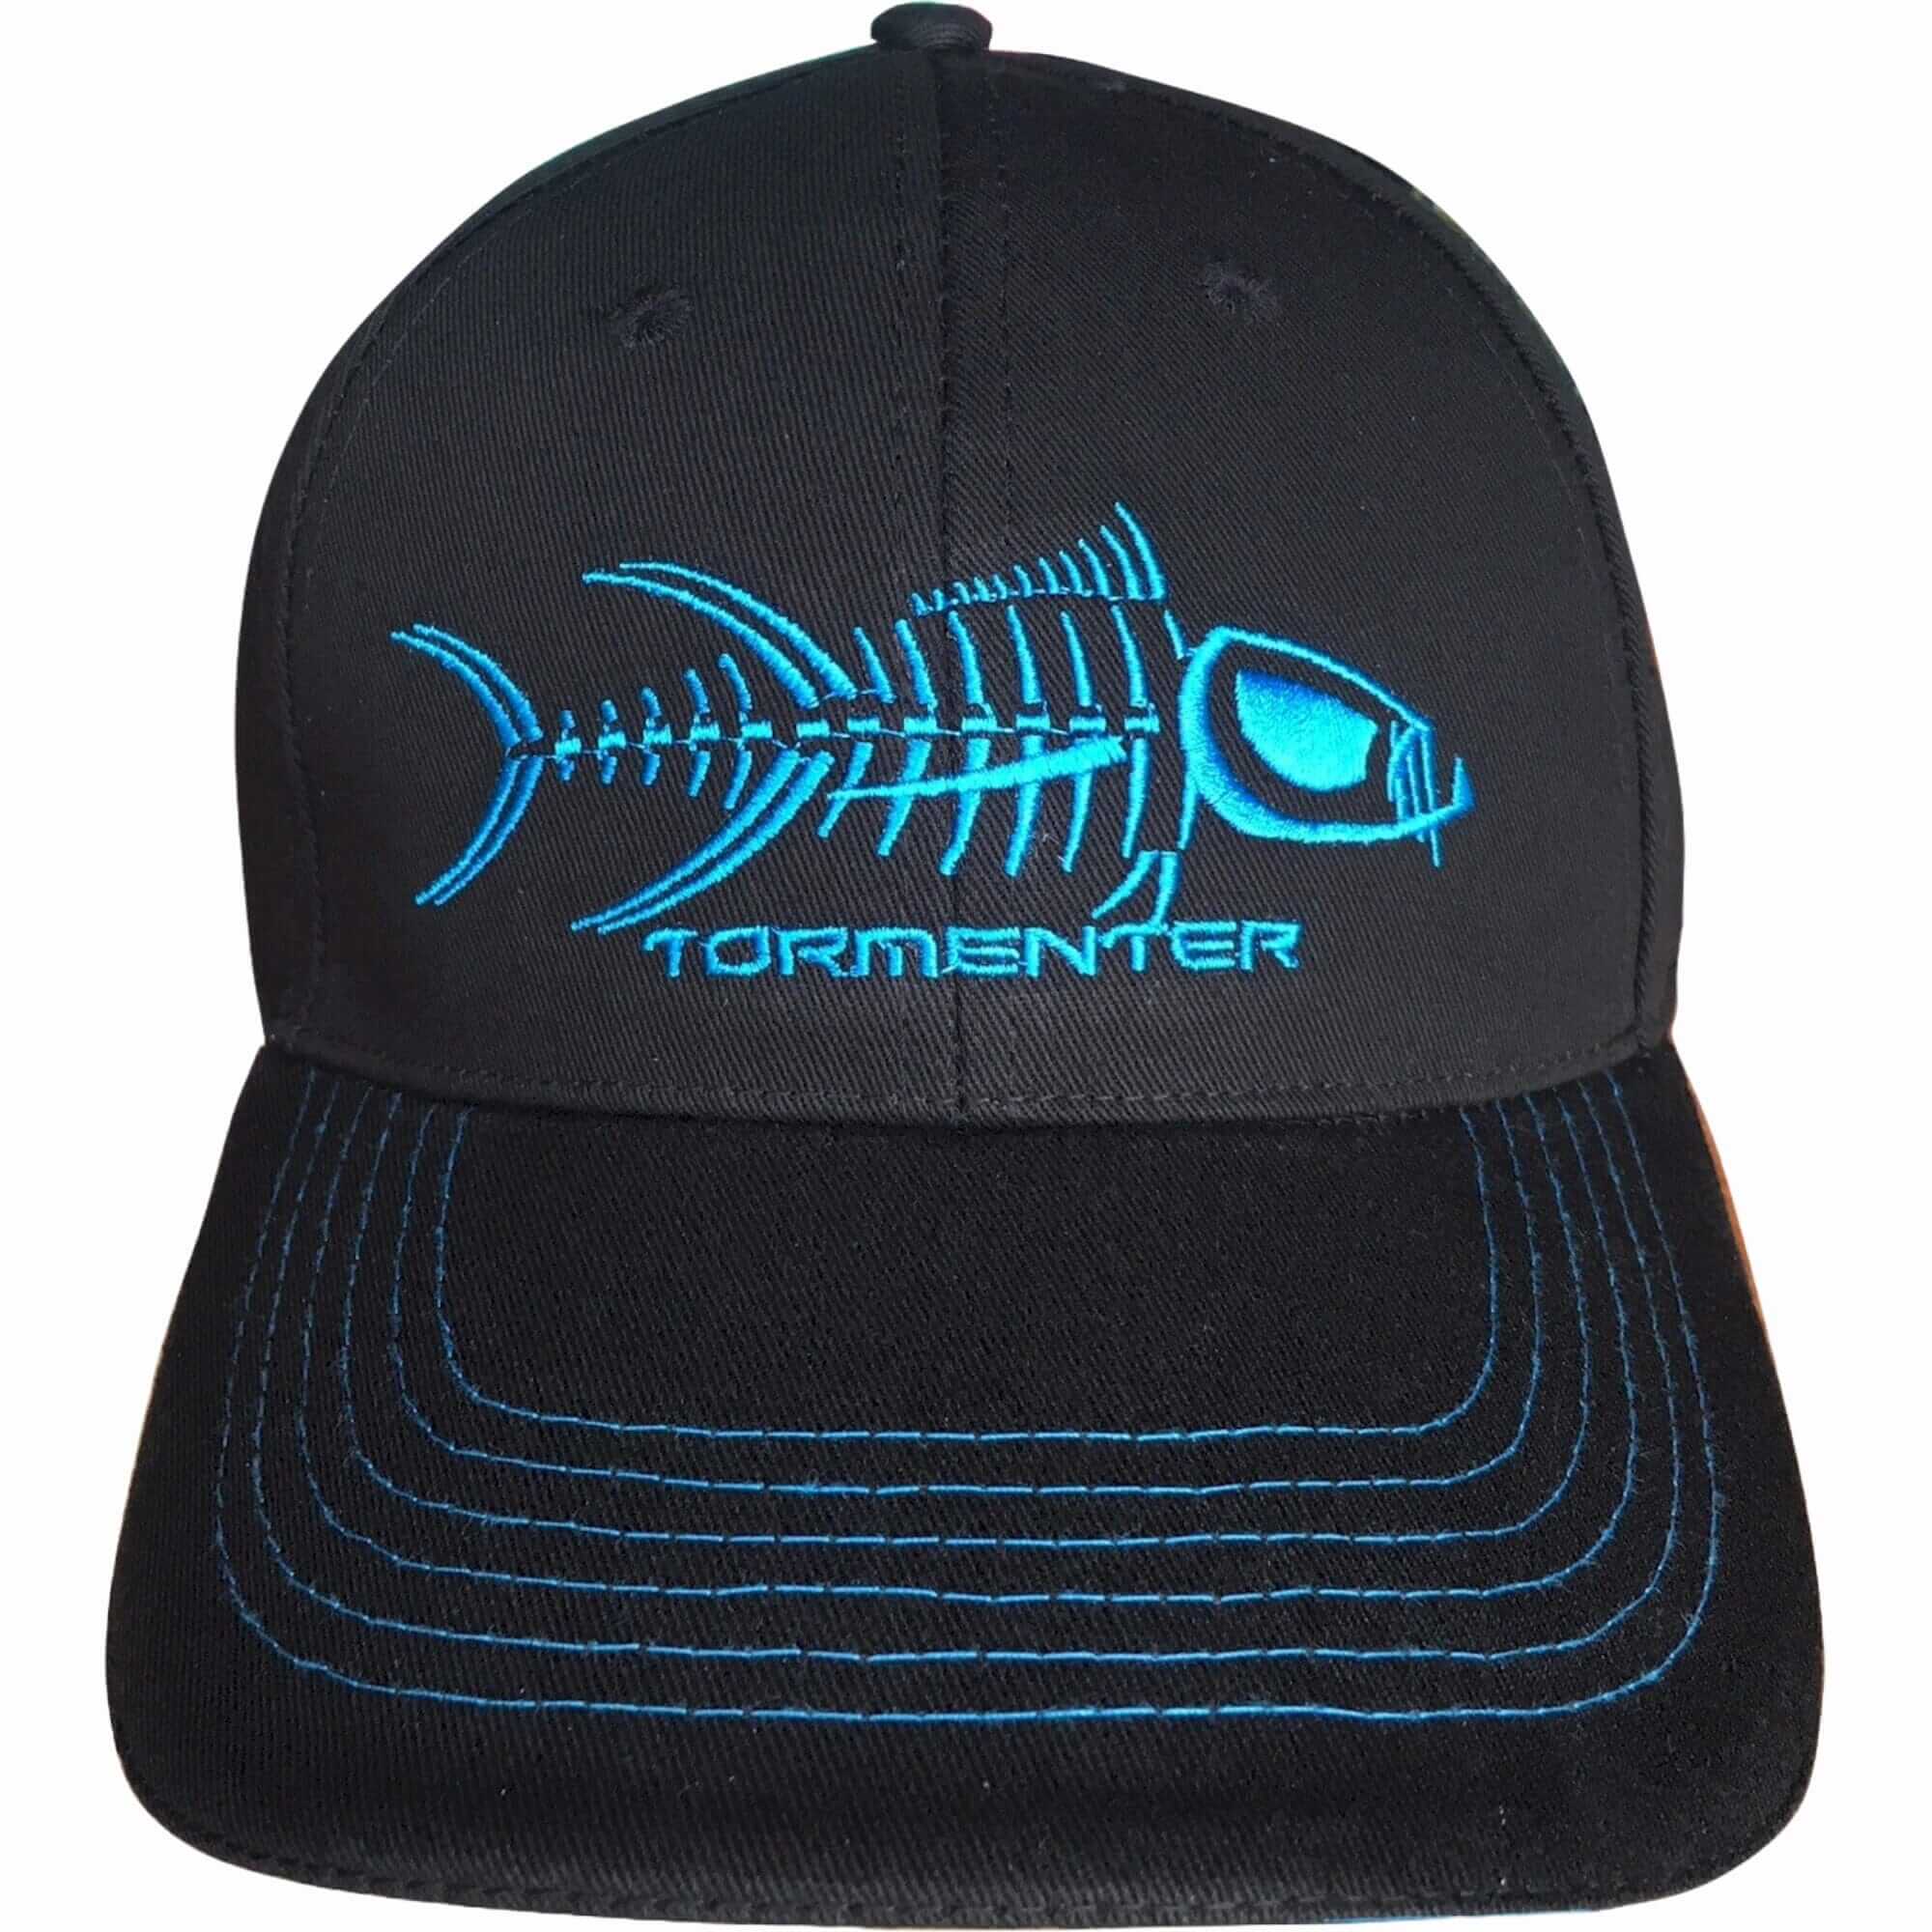 Tormenter Black and Blue Men's Hat